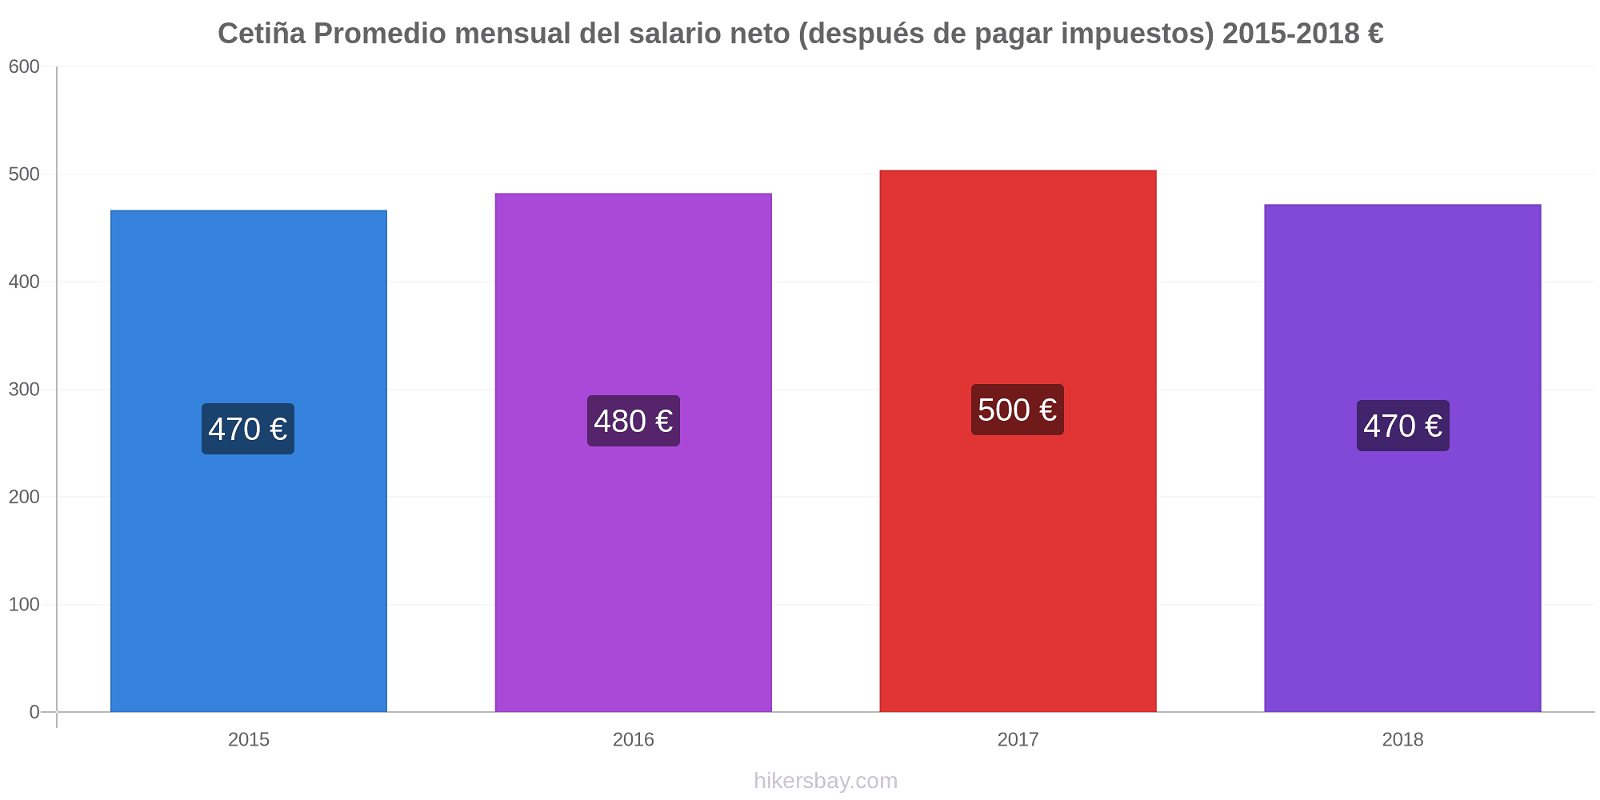 Cetiña cambios de precios Promedio mensual del salario neto (después de pagar impuestos) hikersbay.com